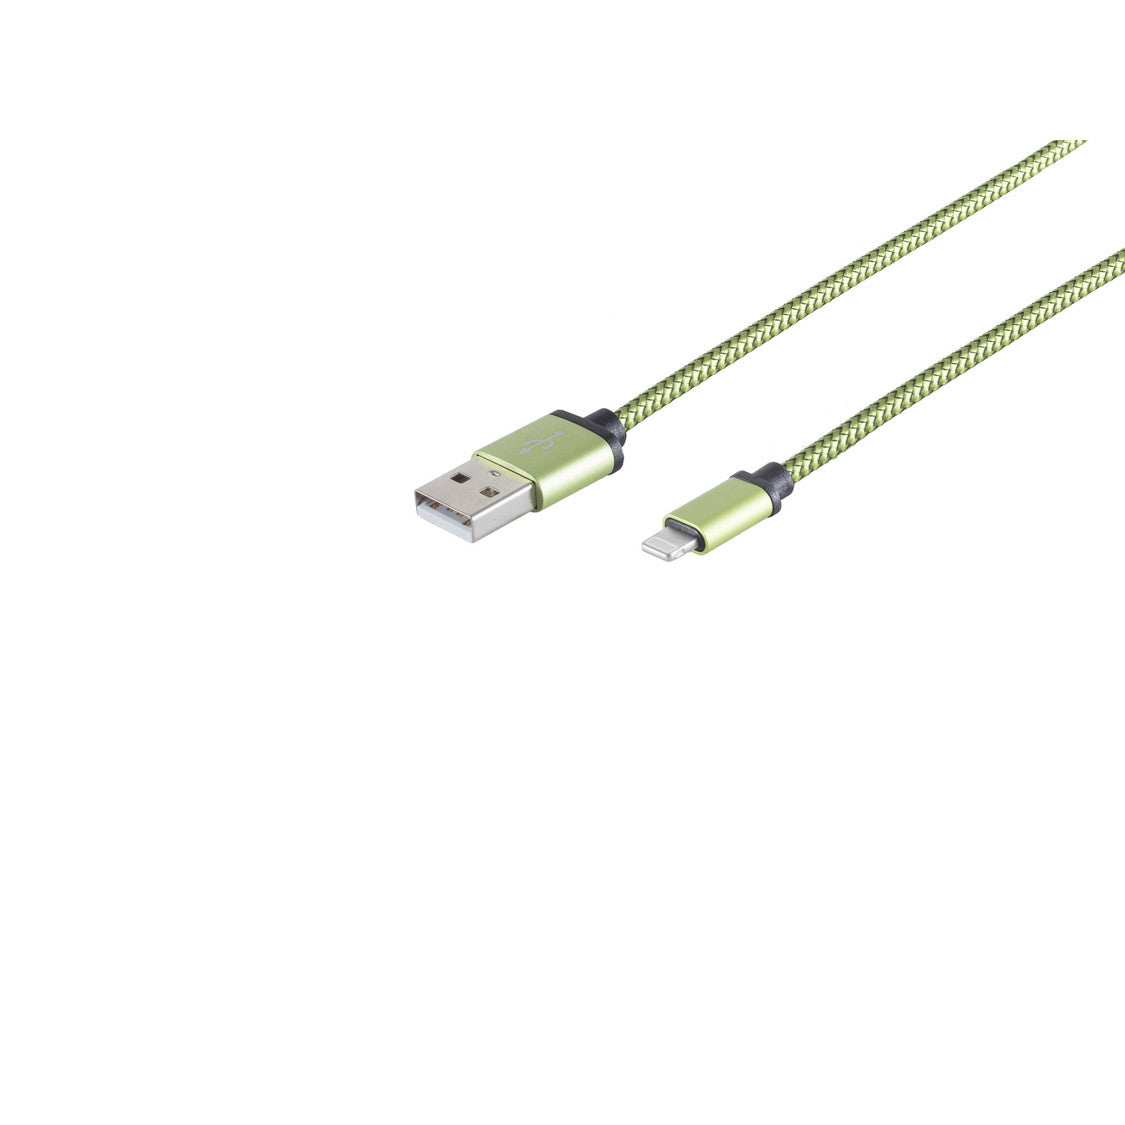 8-Pin Ladekabel, USB-A-Stecker auf 8-pin Stecker, Nylon